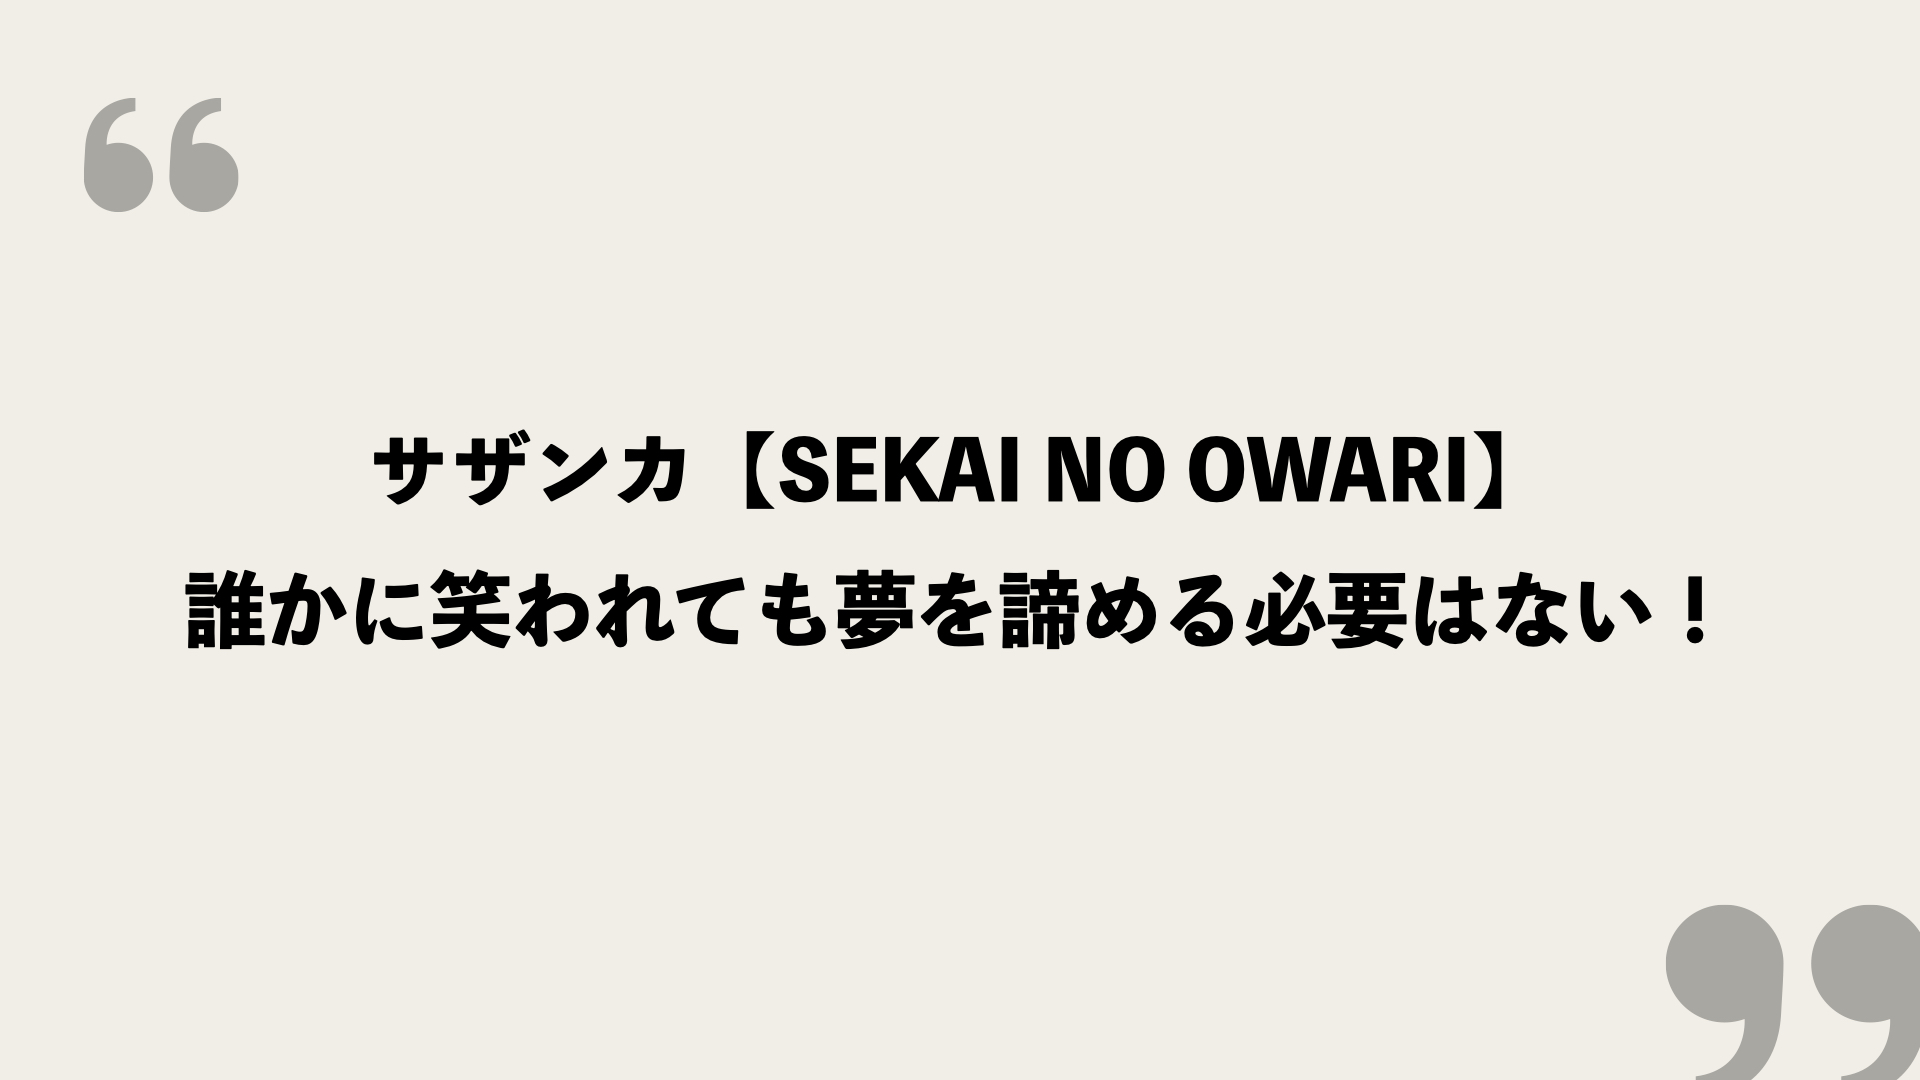 サザンカ Sekai No Owari 歌詞の意味を考察 誰かに笑われても夢を諦める必要はない Framu Media